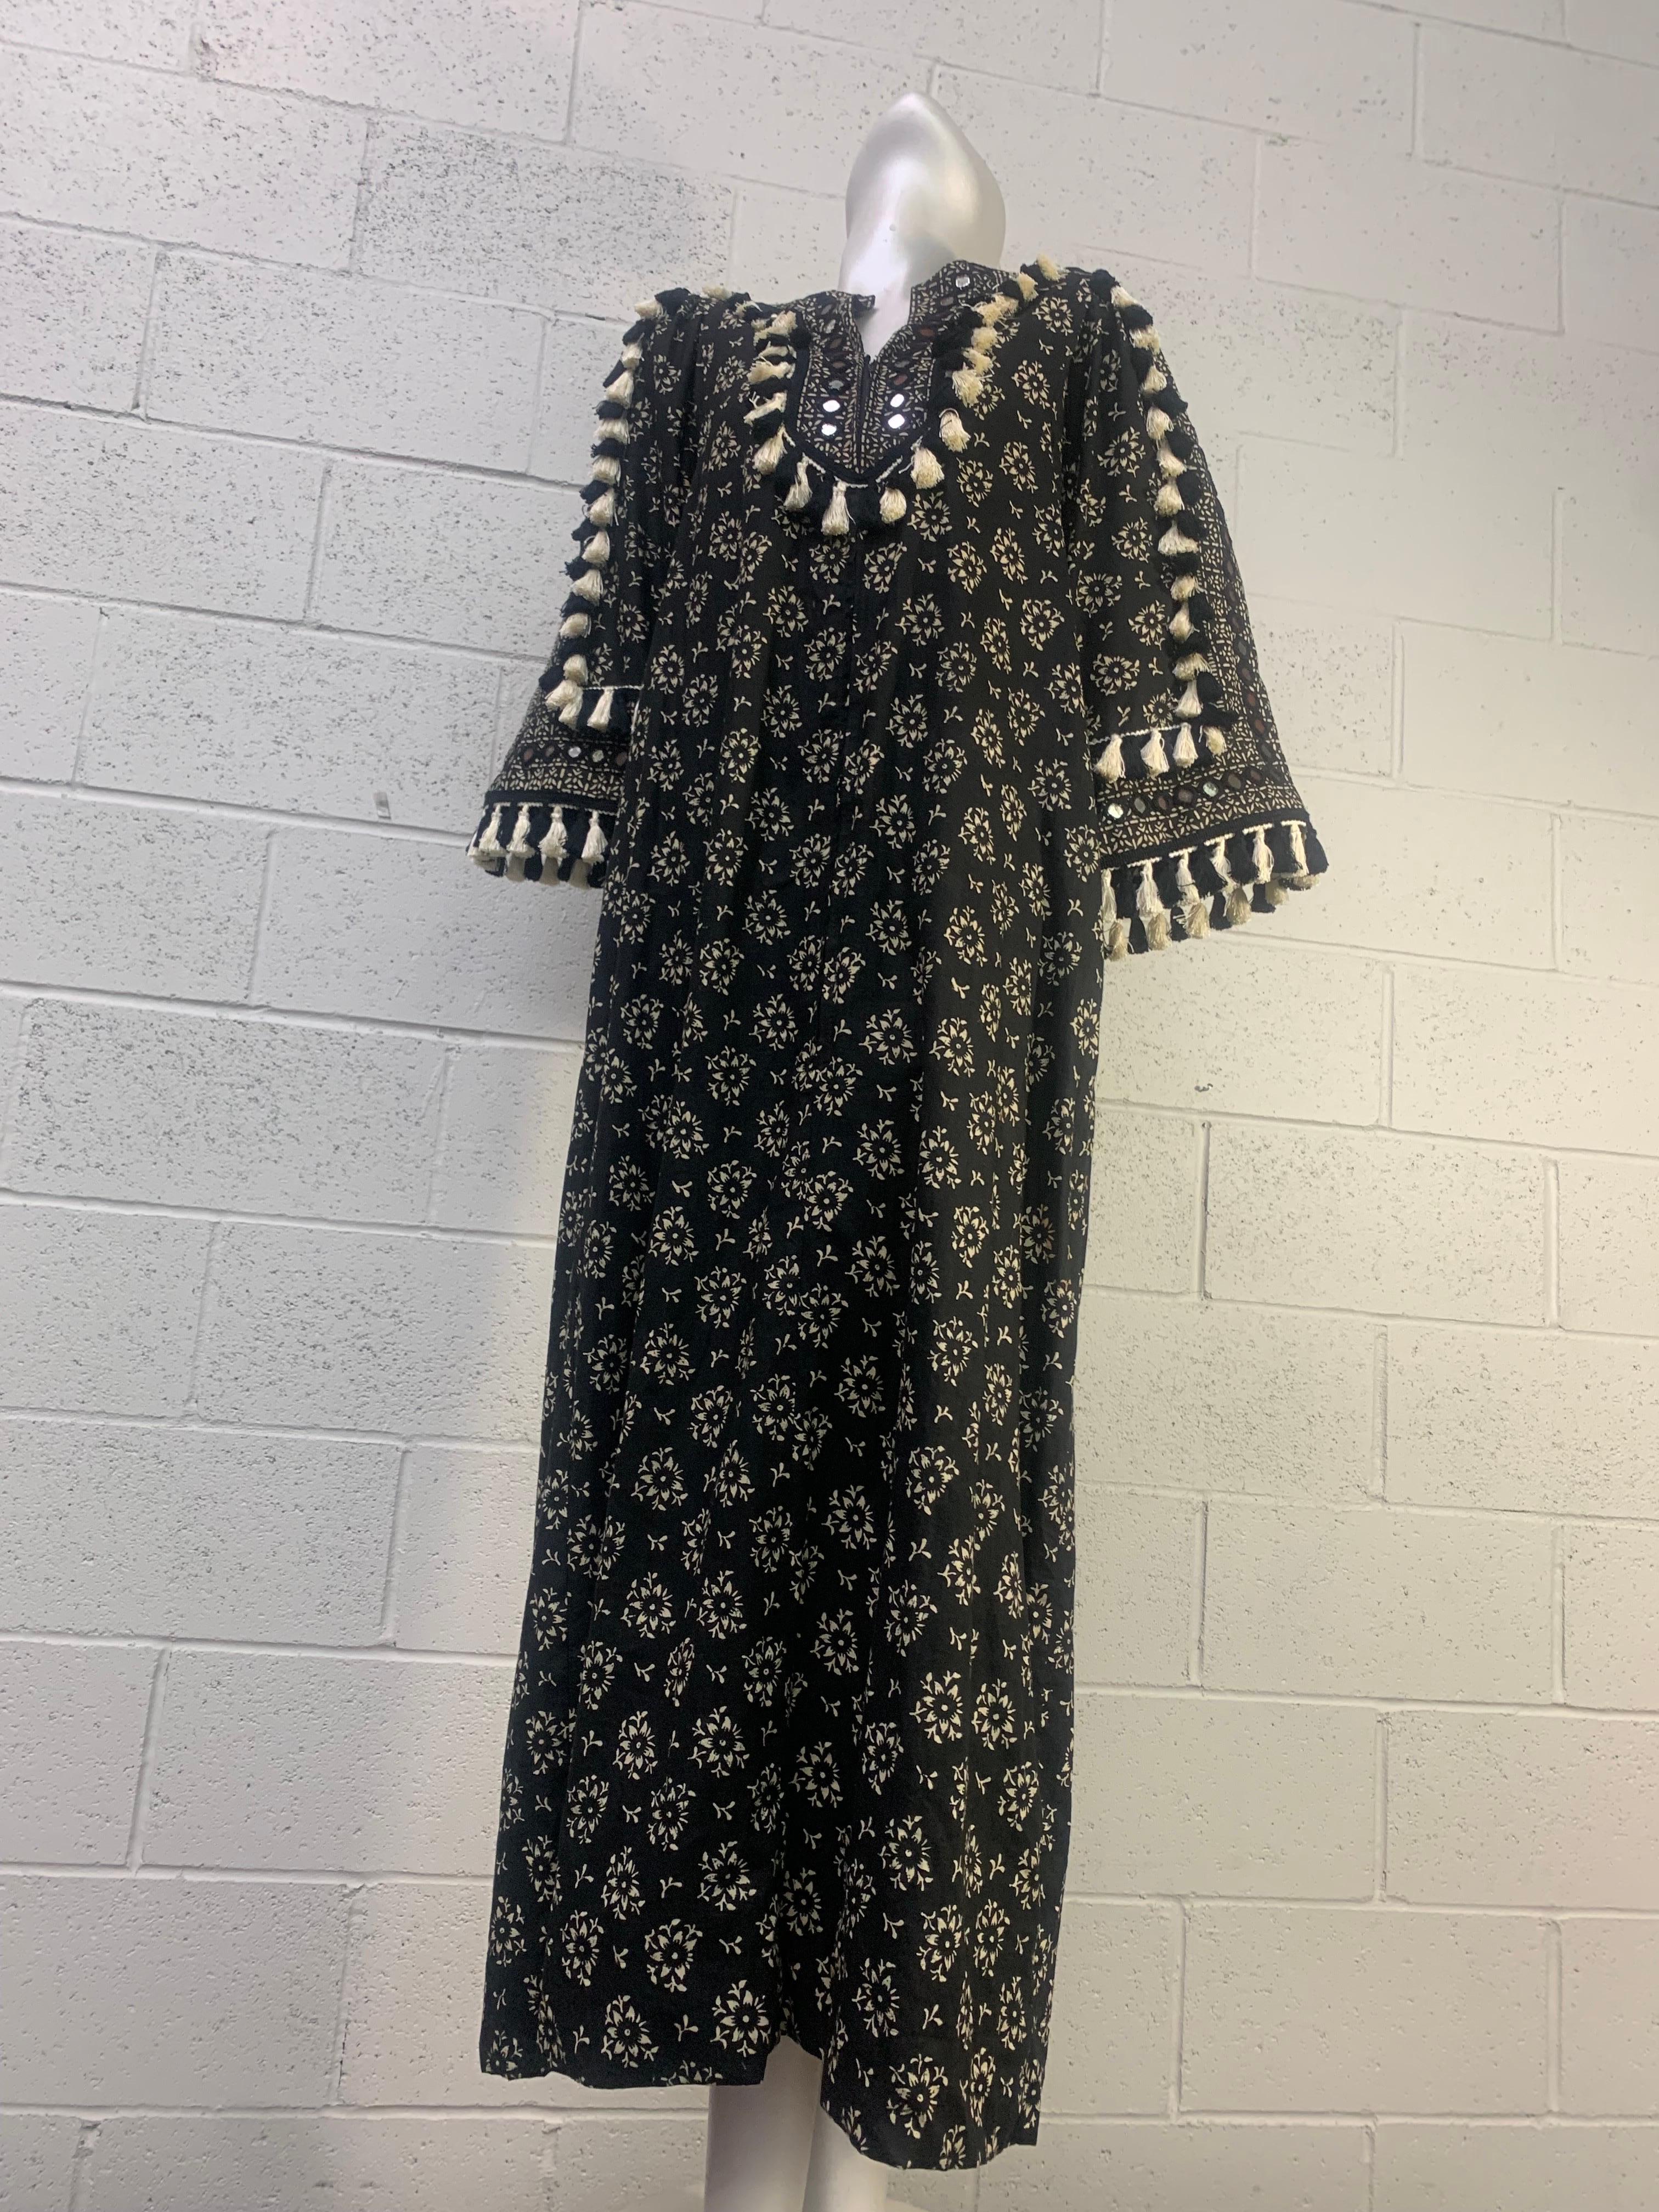 Torso Creations Embellished Ramona Rull B/W Block Print Hostess Gown w Tassels 12